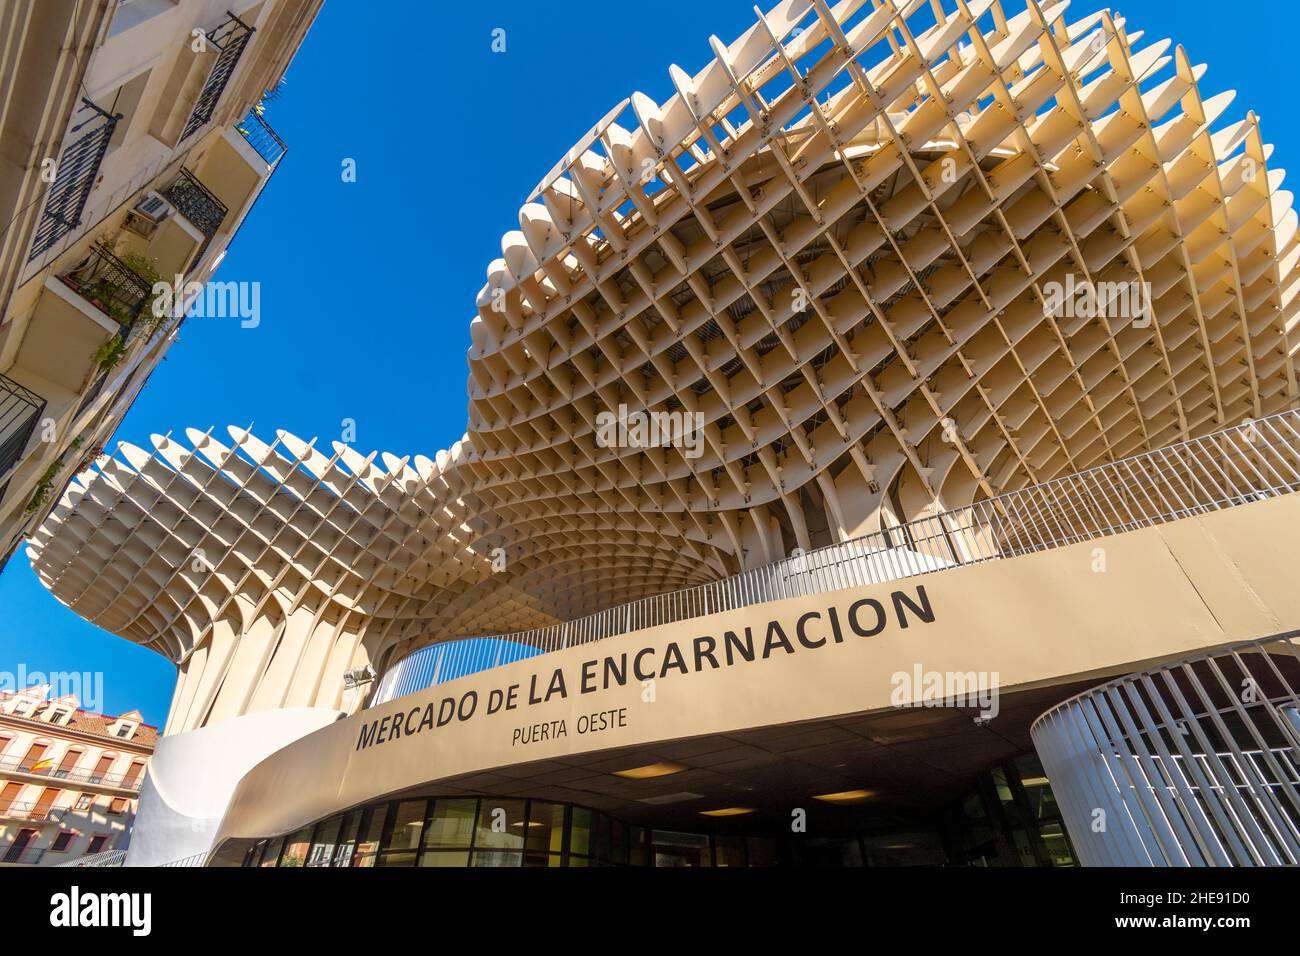 The Metropol Parasol, a huge wooden structure at La Encamacion square, designed by architect Jurgen Mayer at the Setas de Sevilla. Stock Photo